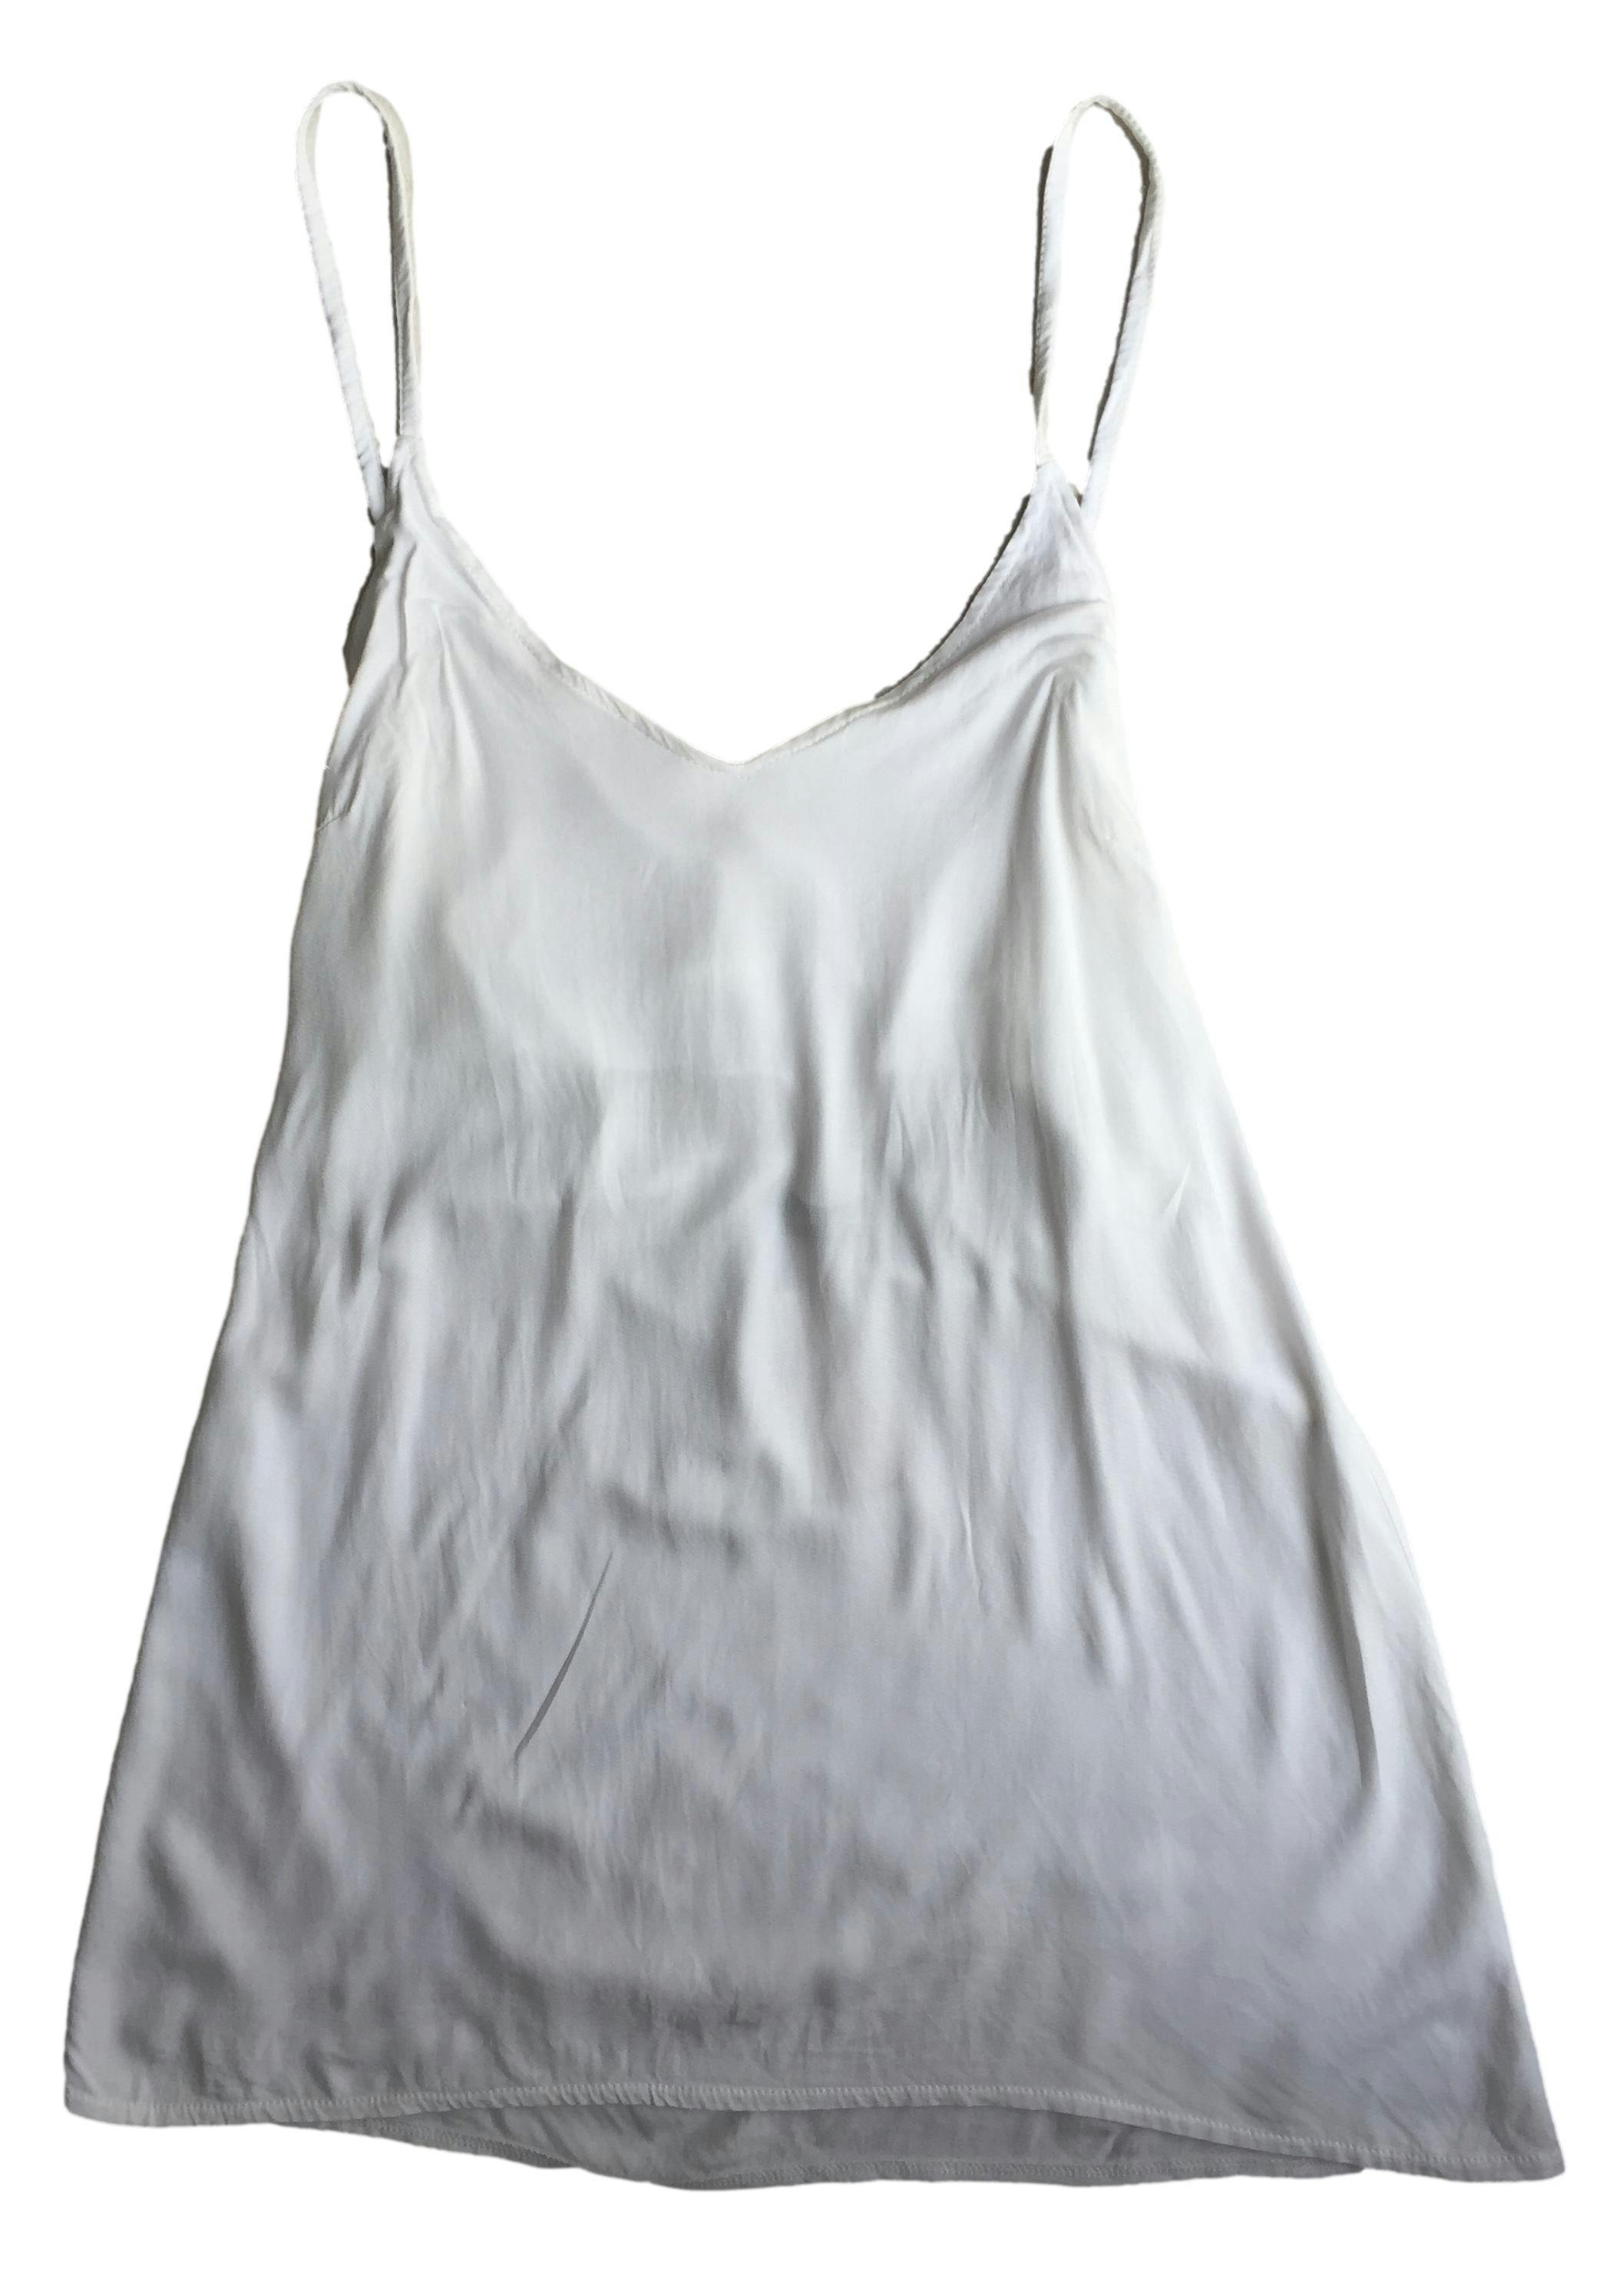  Blusa blanca con tiras para anudar en la espalda, elástico posterior. Busto: 84cm, Largo: 75cm